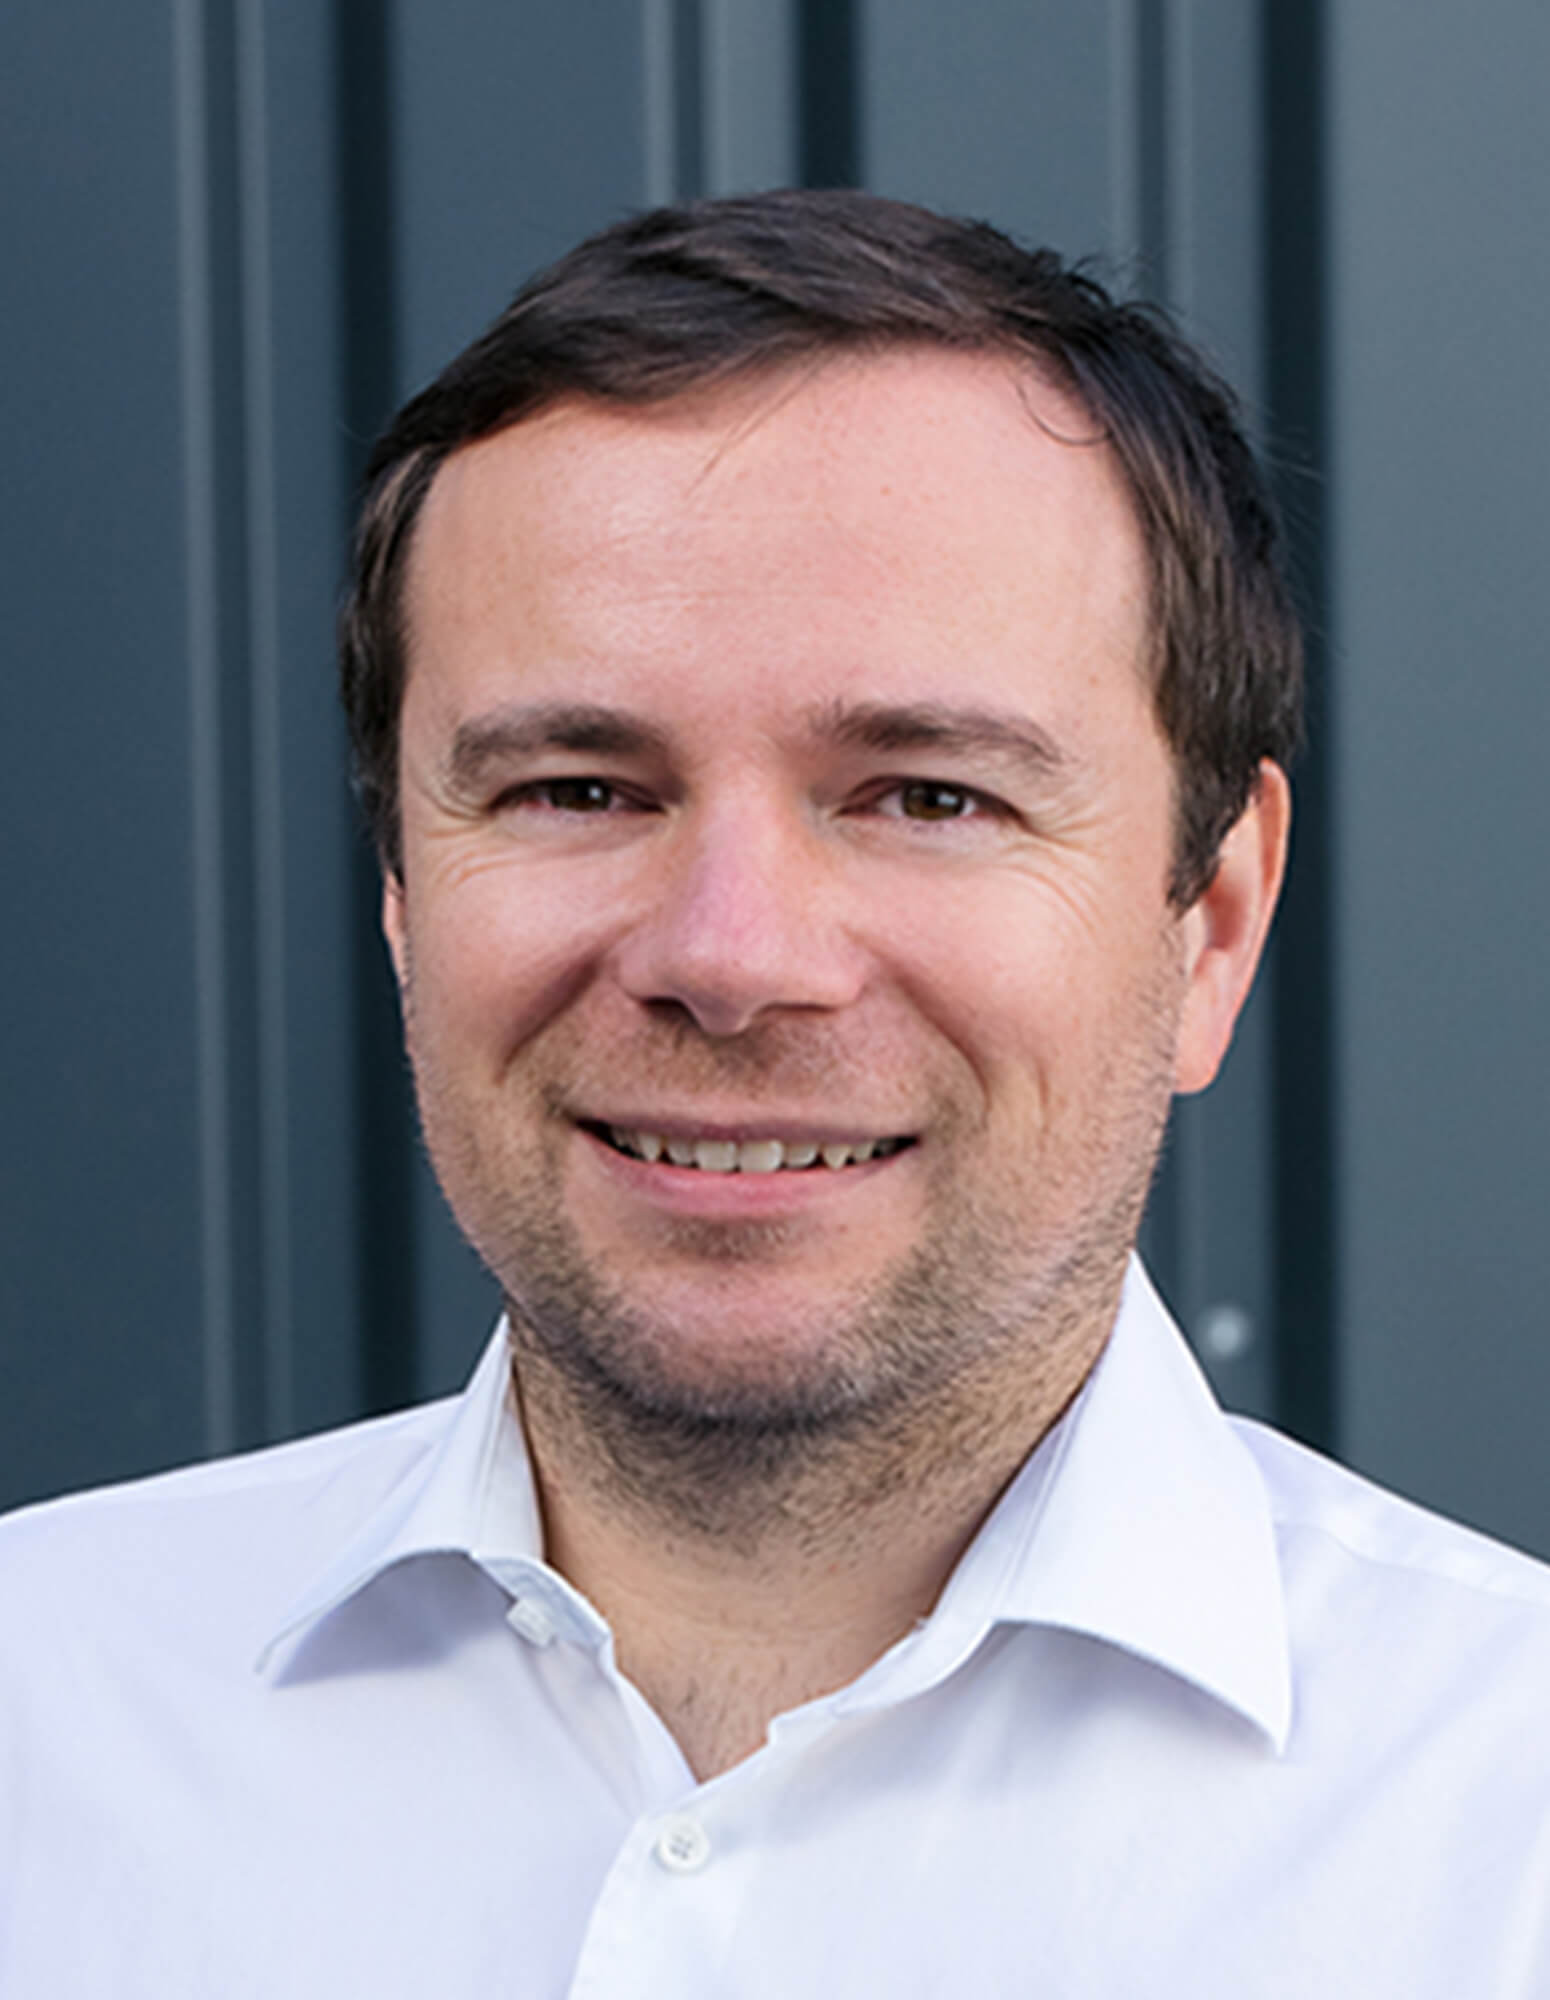 Dr. Steffen Zoller is Venture partner at Ananda Impact Ventures